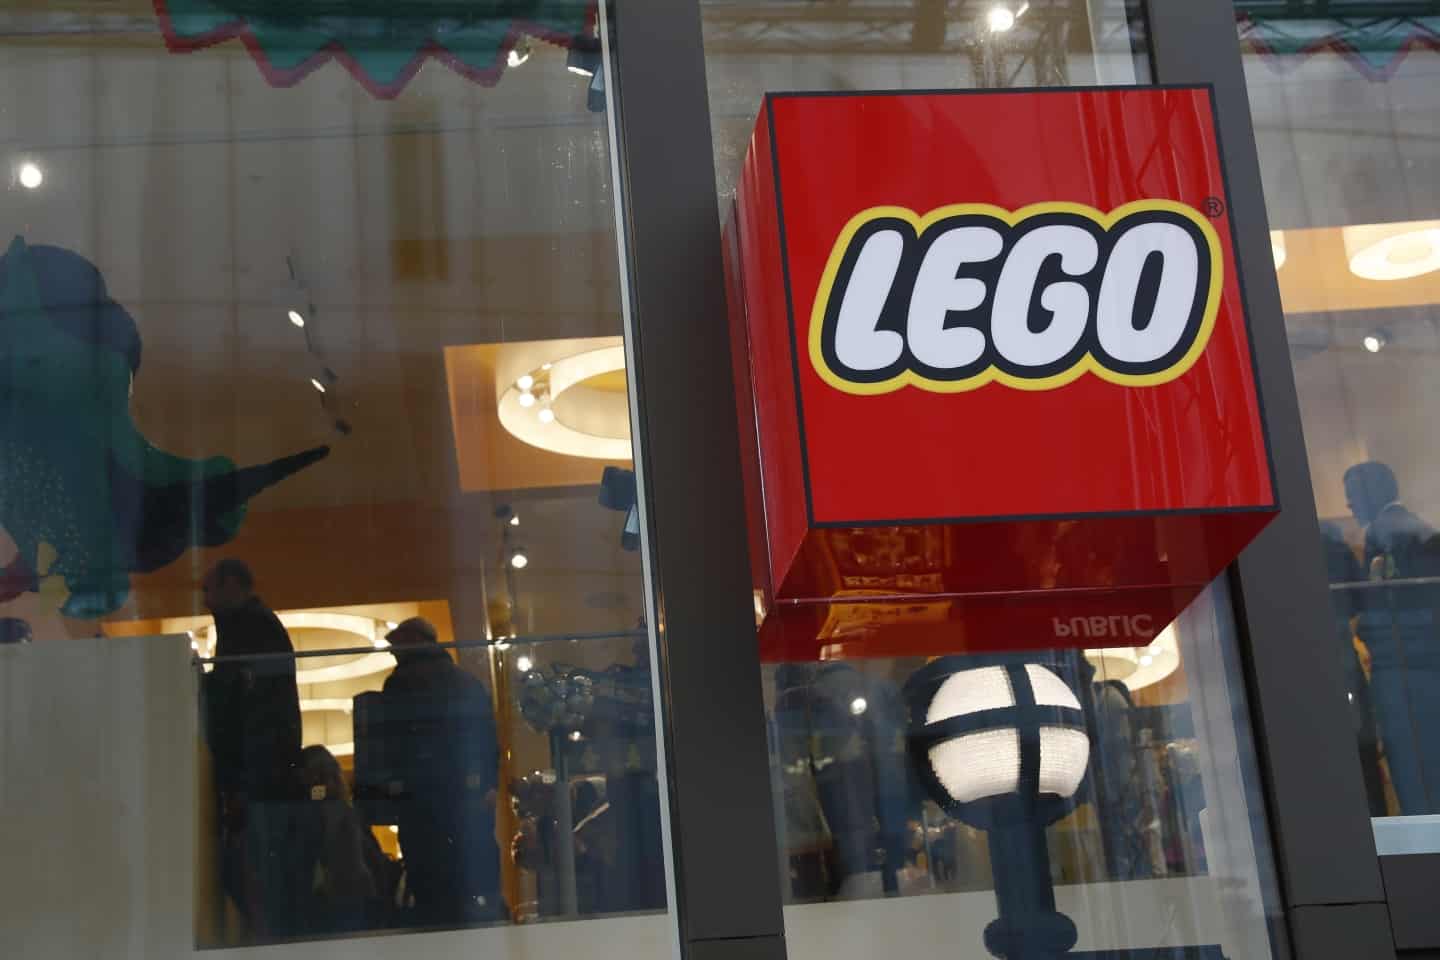 Morgenøvelser Ved krænkelse Lego vil åbne langt over 100 nye butikker i år - særligt ét land er i fokus  | avisendanmark.dk